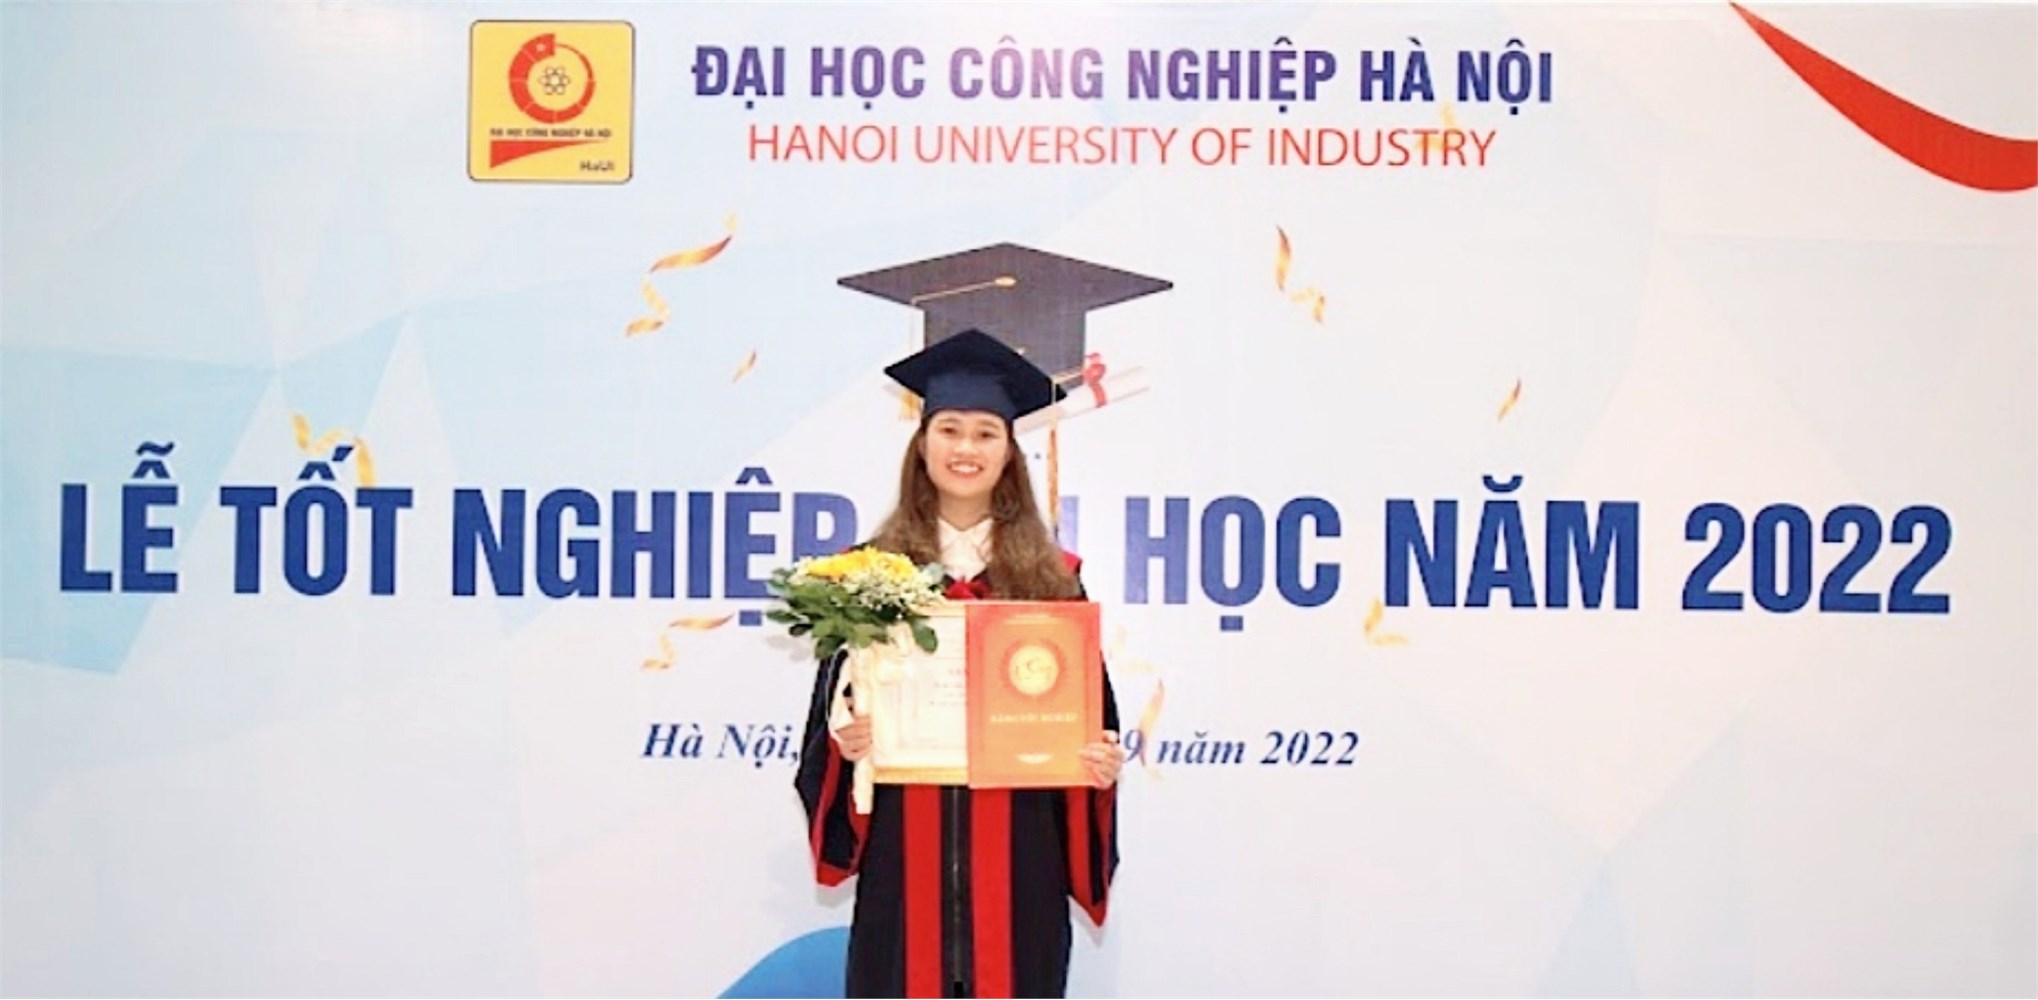 Nguyễn Thúy Lan- Nữ sinh vượt khó vươn lên xuất sắc giành tấm bằng tốt nghiệp Giỏi ngành CNKT Cơ khí